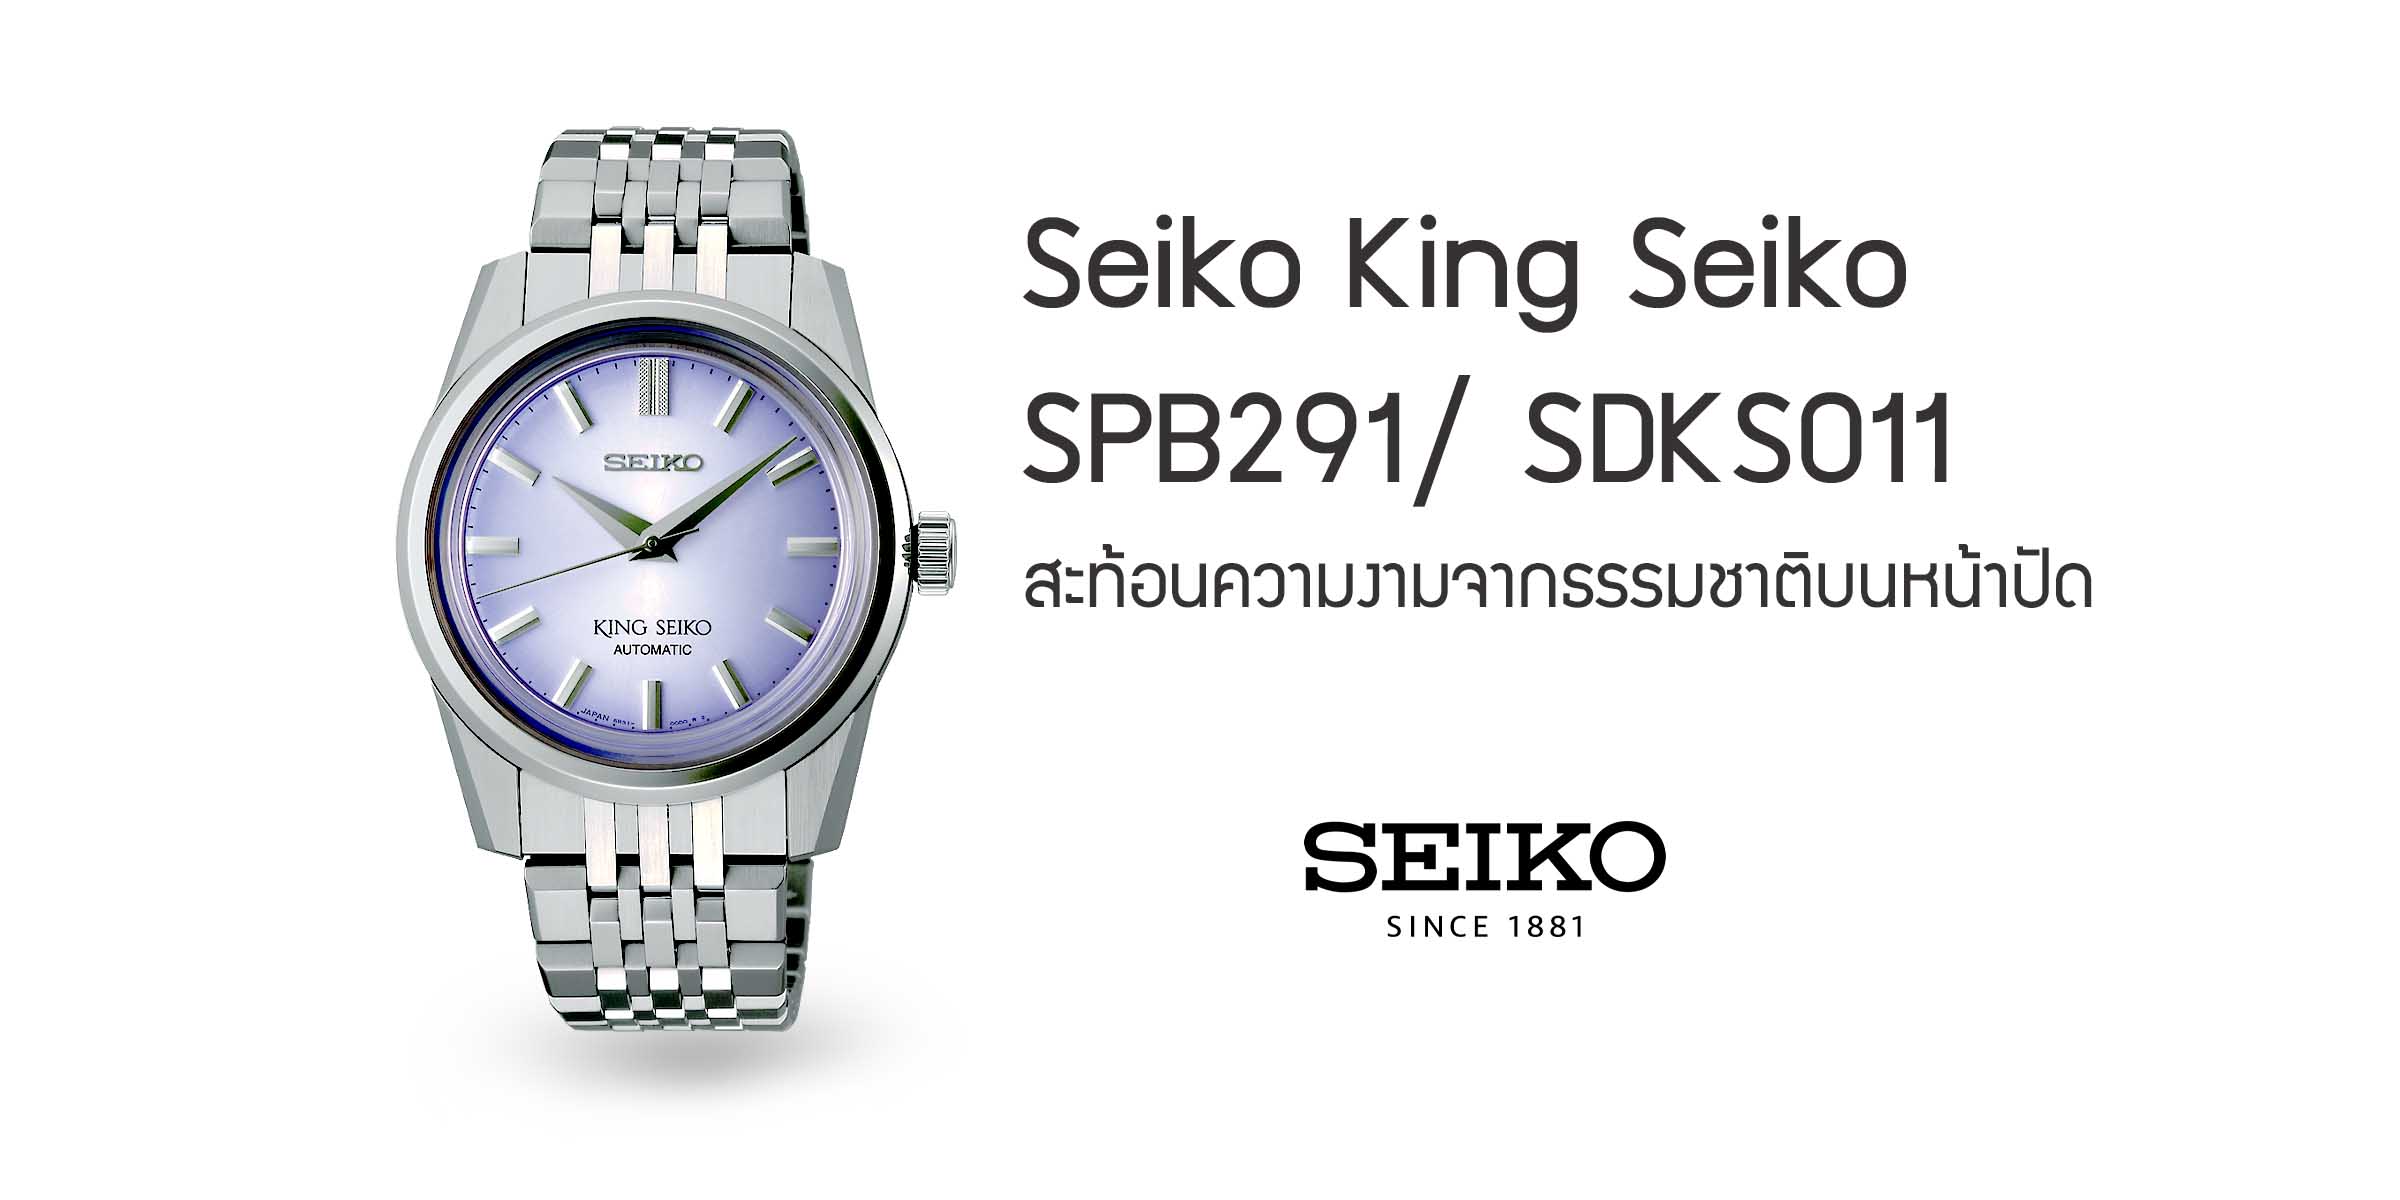 Seiko King Seiko SPB291/ SDKS011